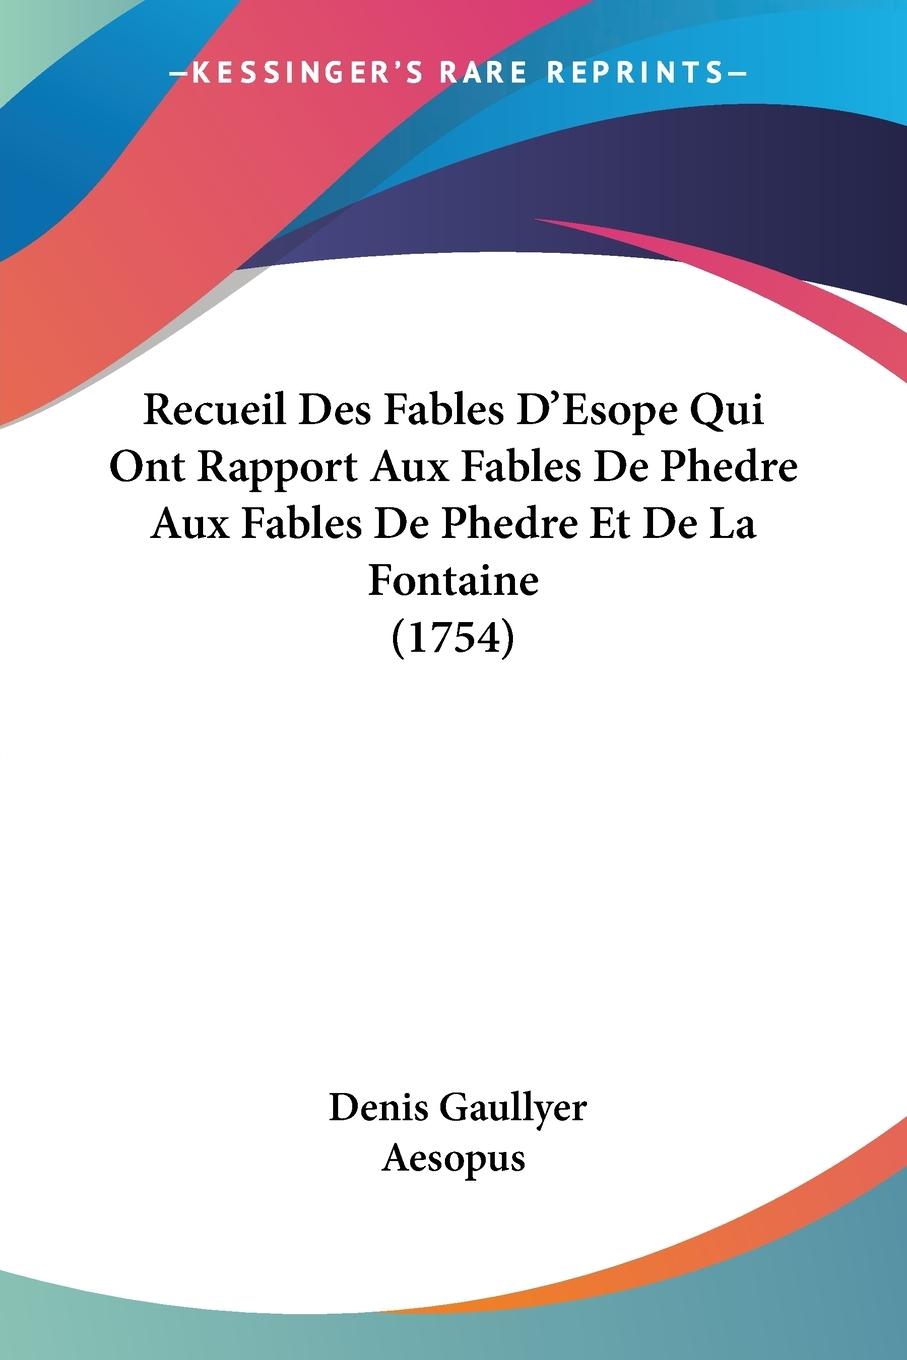 Recueil Des Fables D Esope Qui Ont Rapport Aux Fables De Phedre Aux Fables De Phedre Et De La Fontaine (1754) - Gaullyer, Denis Aesopus